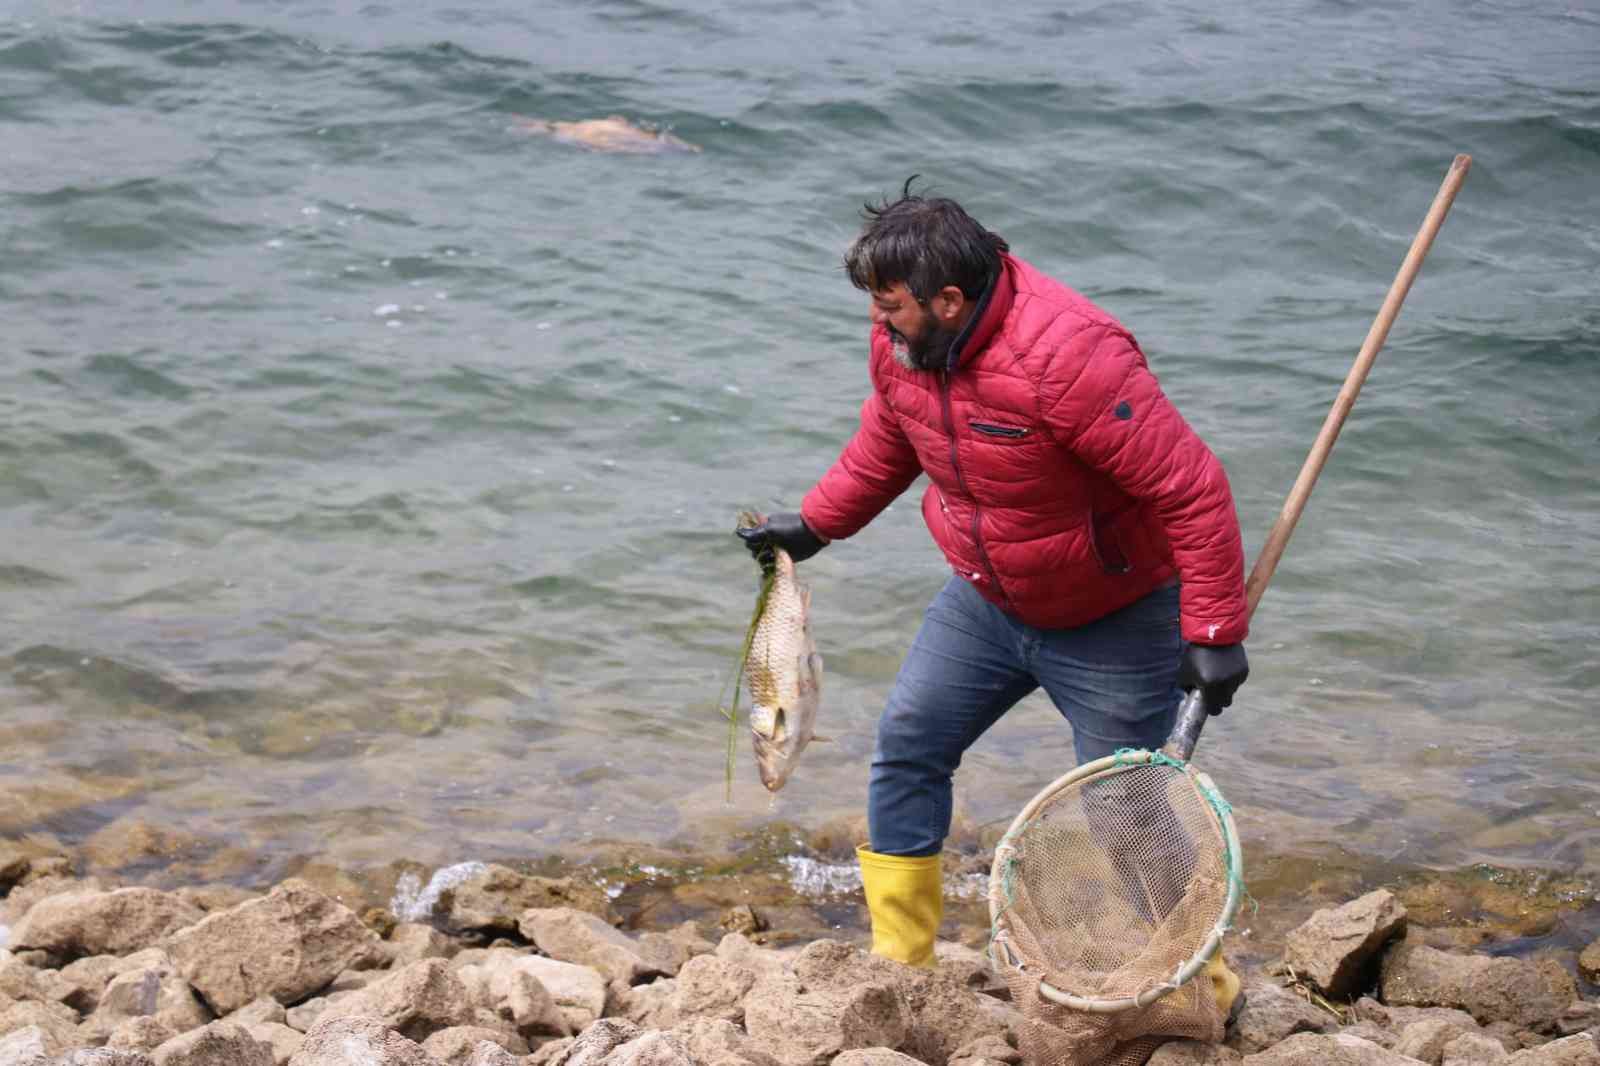 Bolu’da balık ölümlerine ilişkin adli soruşturma başlatıldı